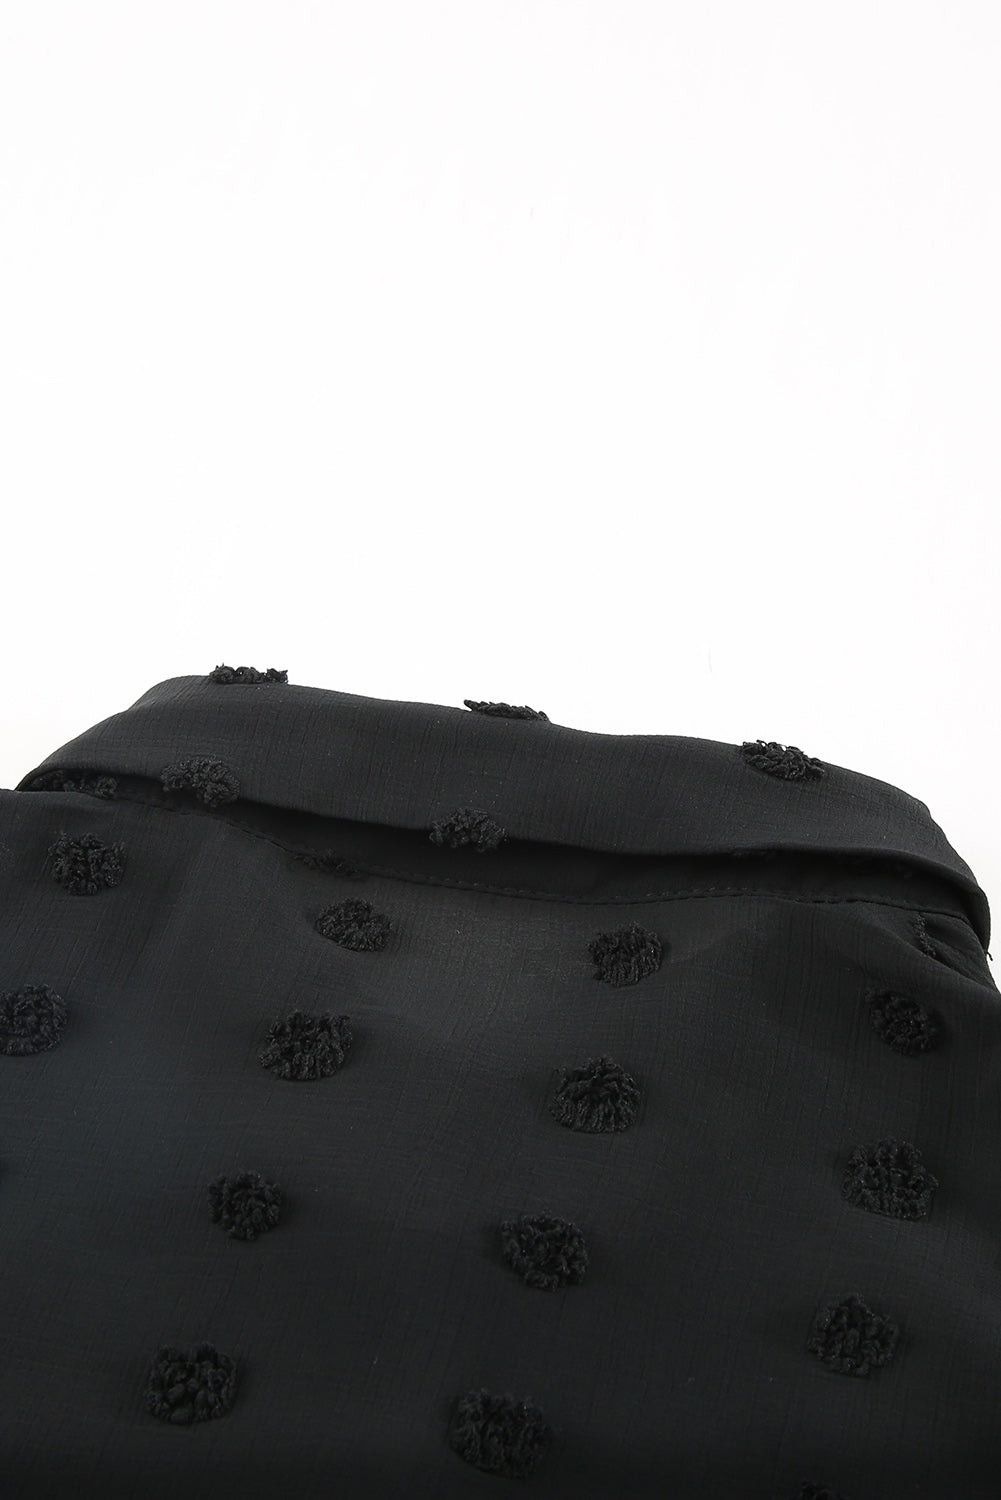 Black Turn-down Collar Ruffle Polka Dot Tank Tank Tops JT's Designer Fashion